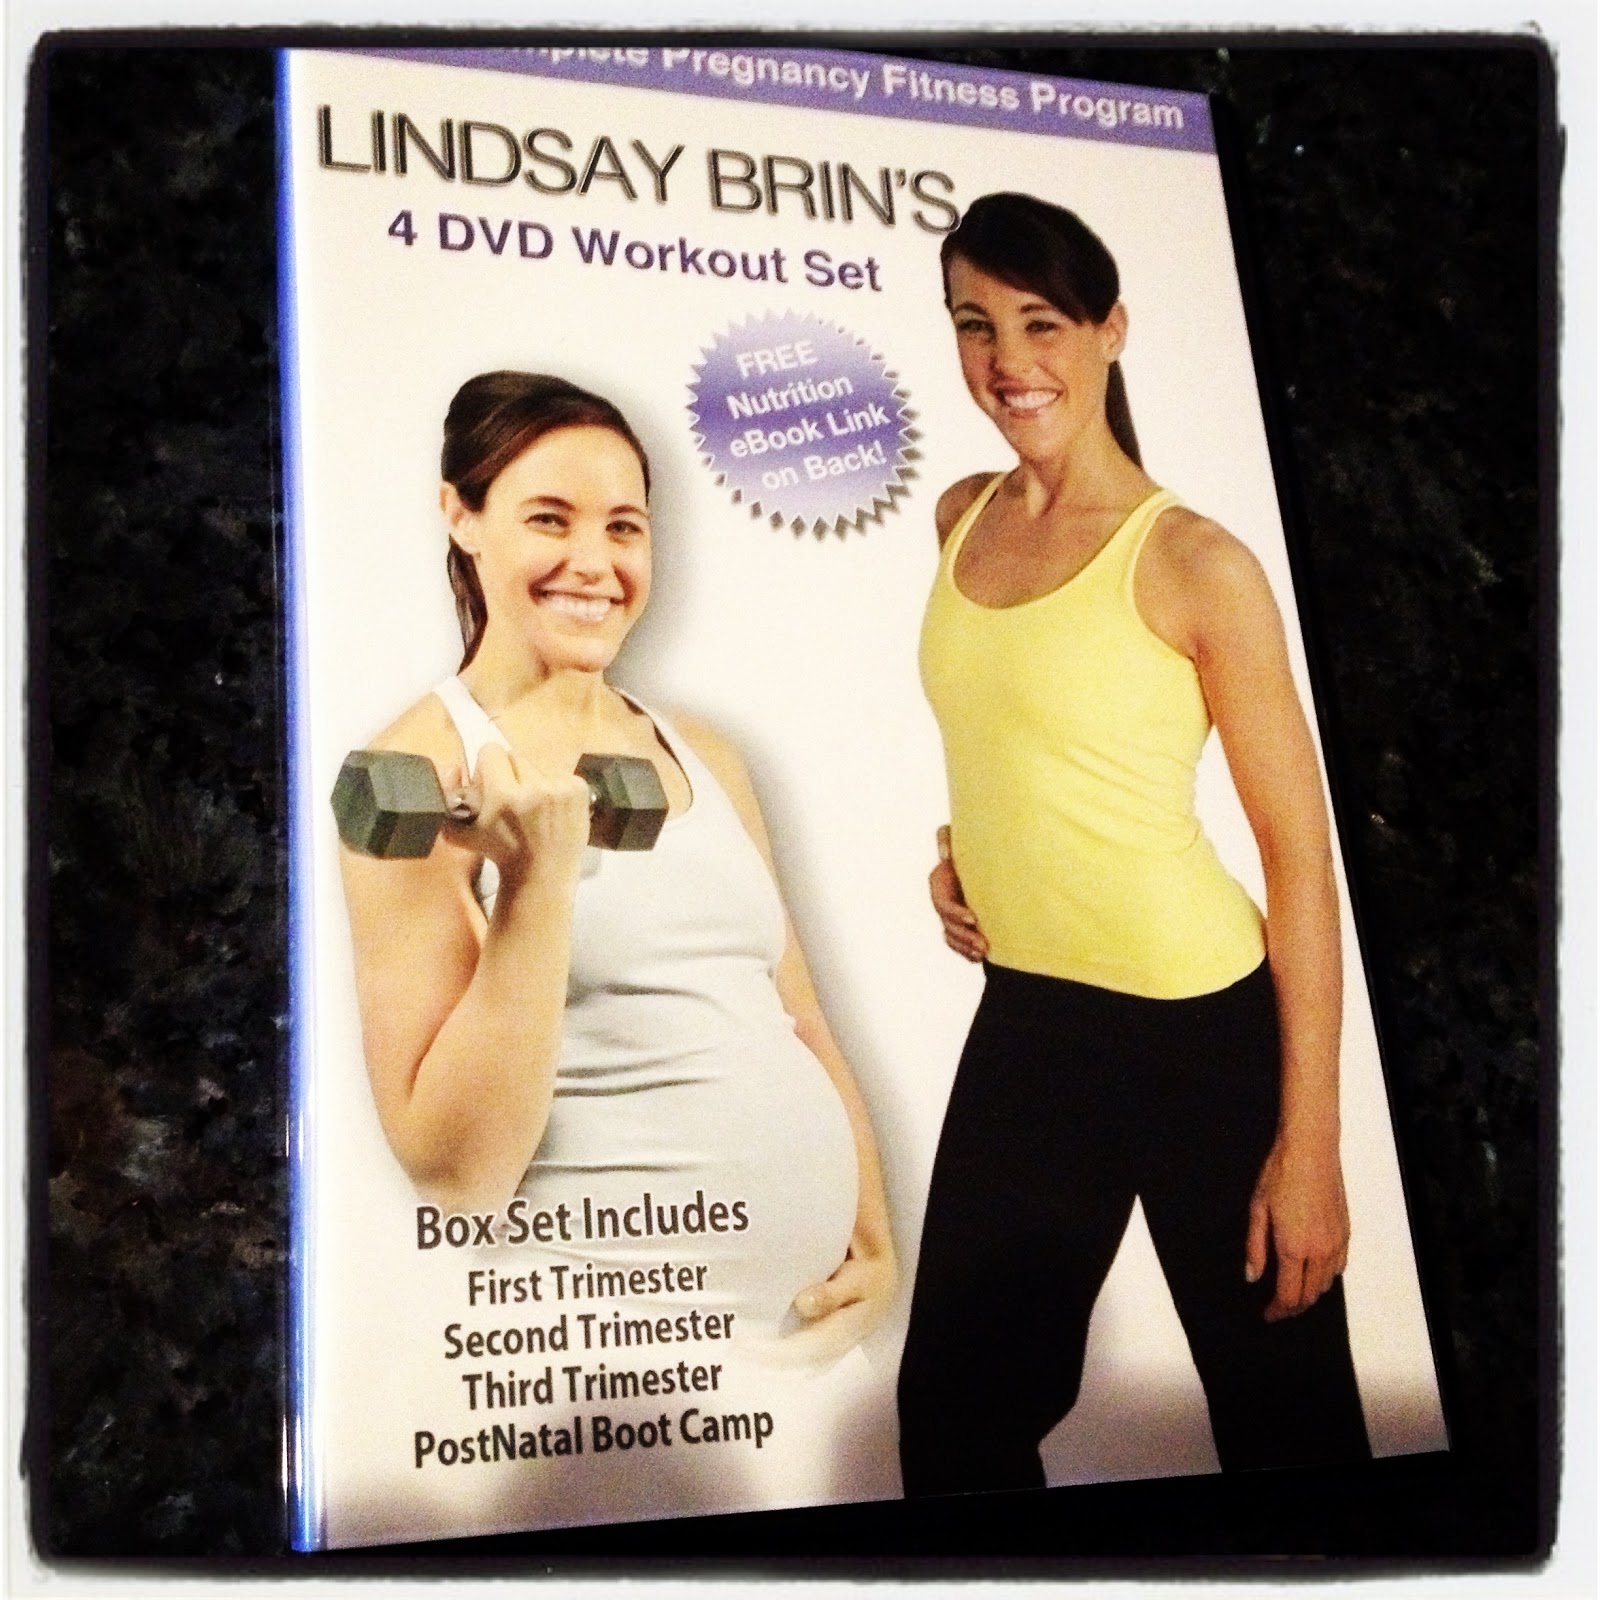  Lindsay Brins Complete Pregnancy 4 Dvd Workout Set for Fat Body